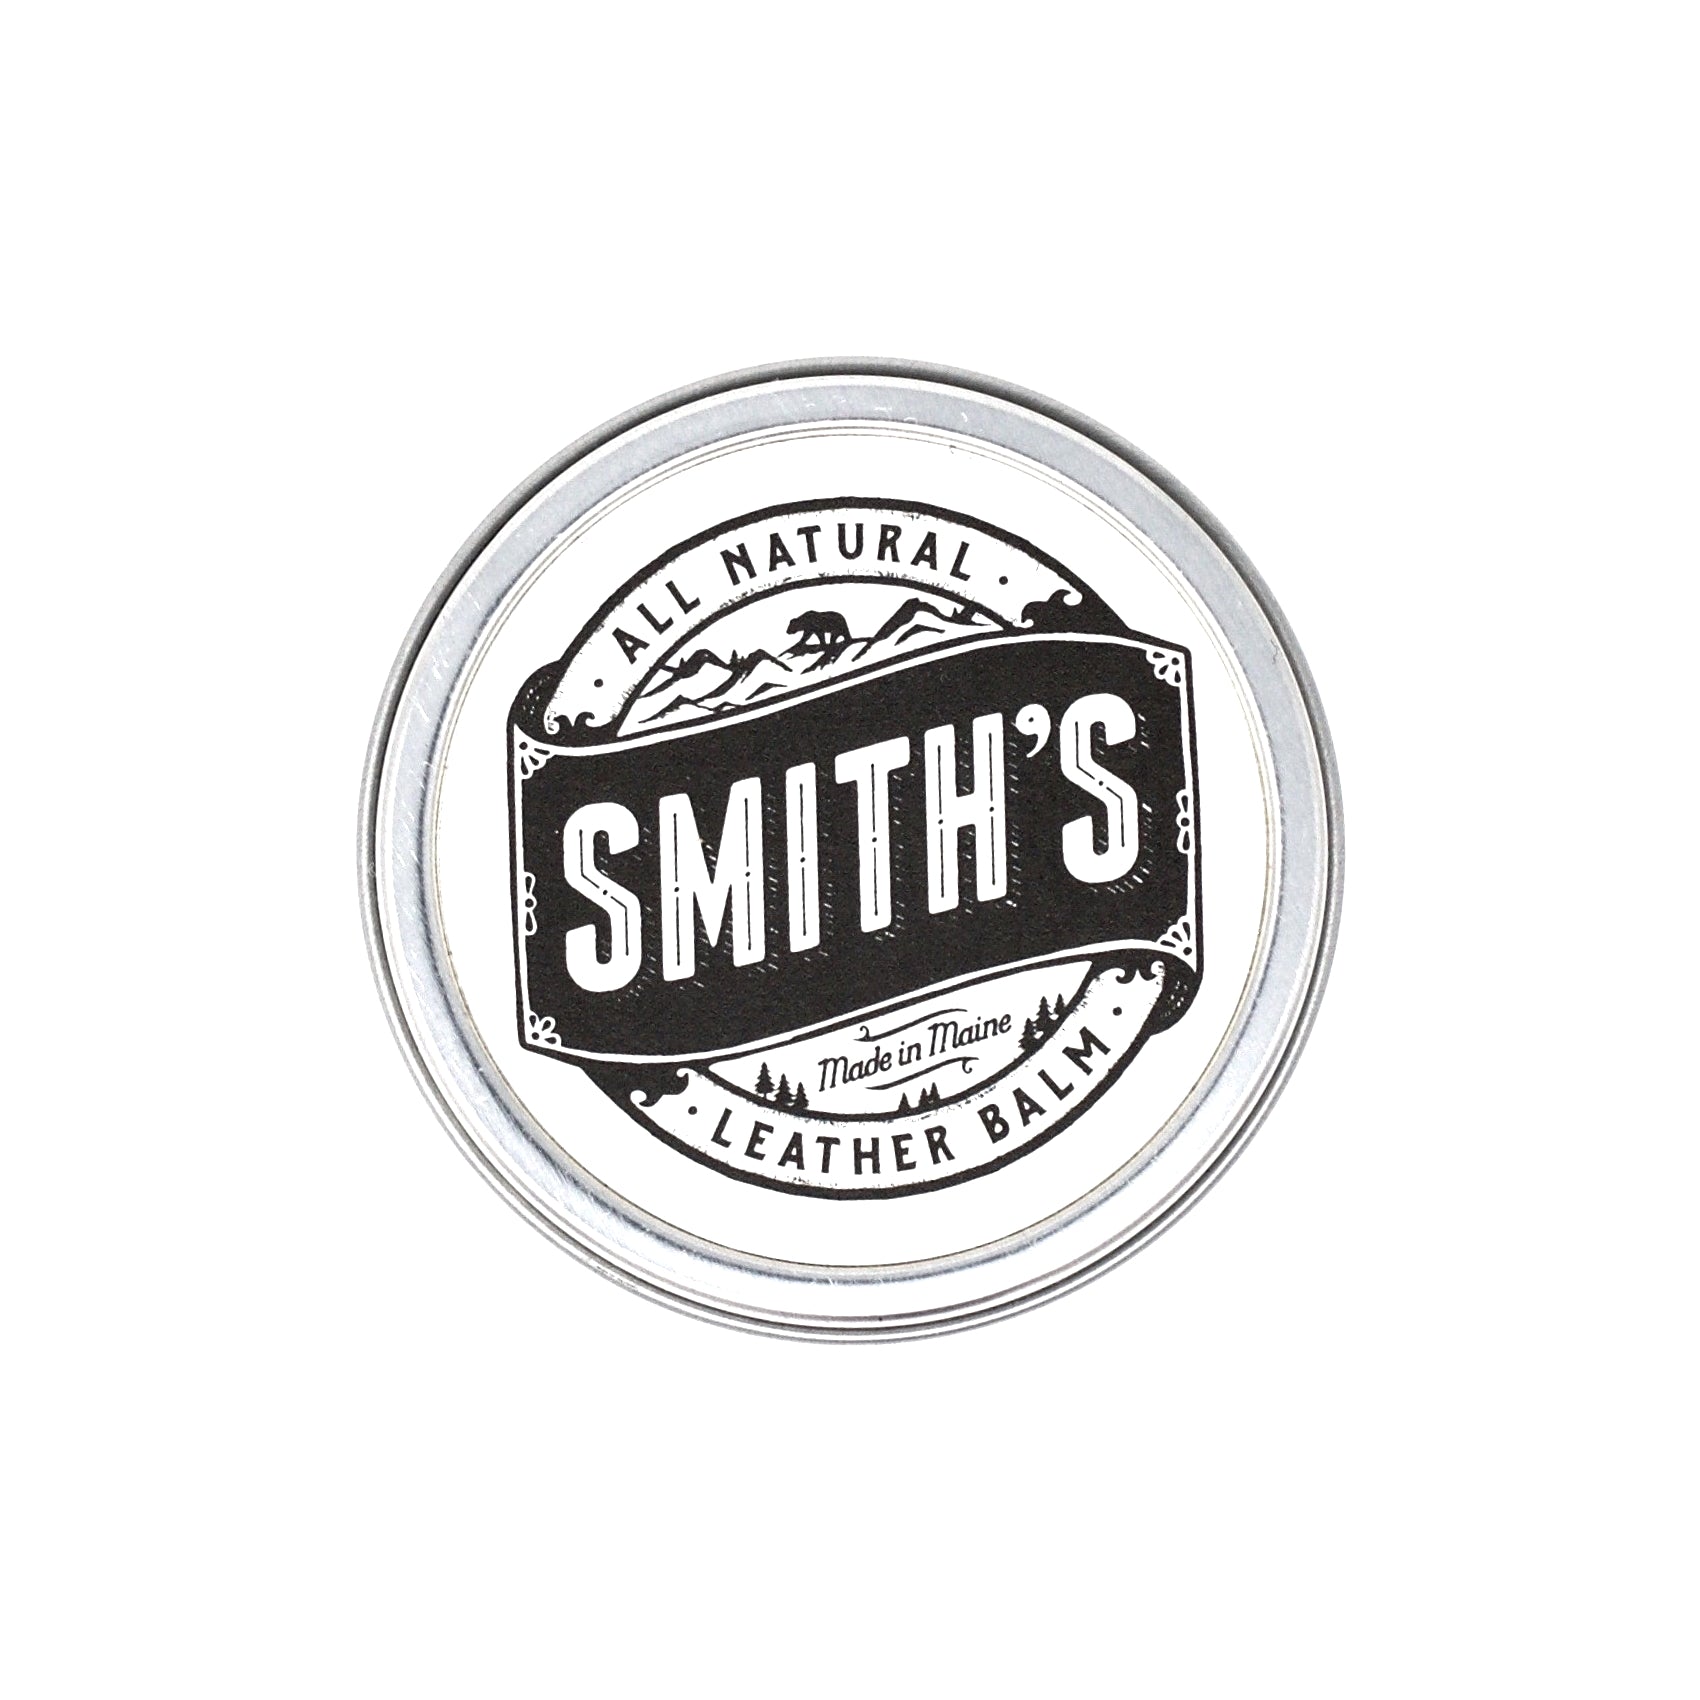 Smith's Leather Balm - Neutral 1oz.